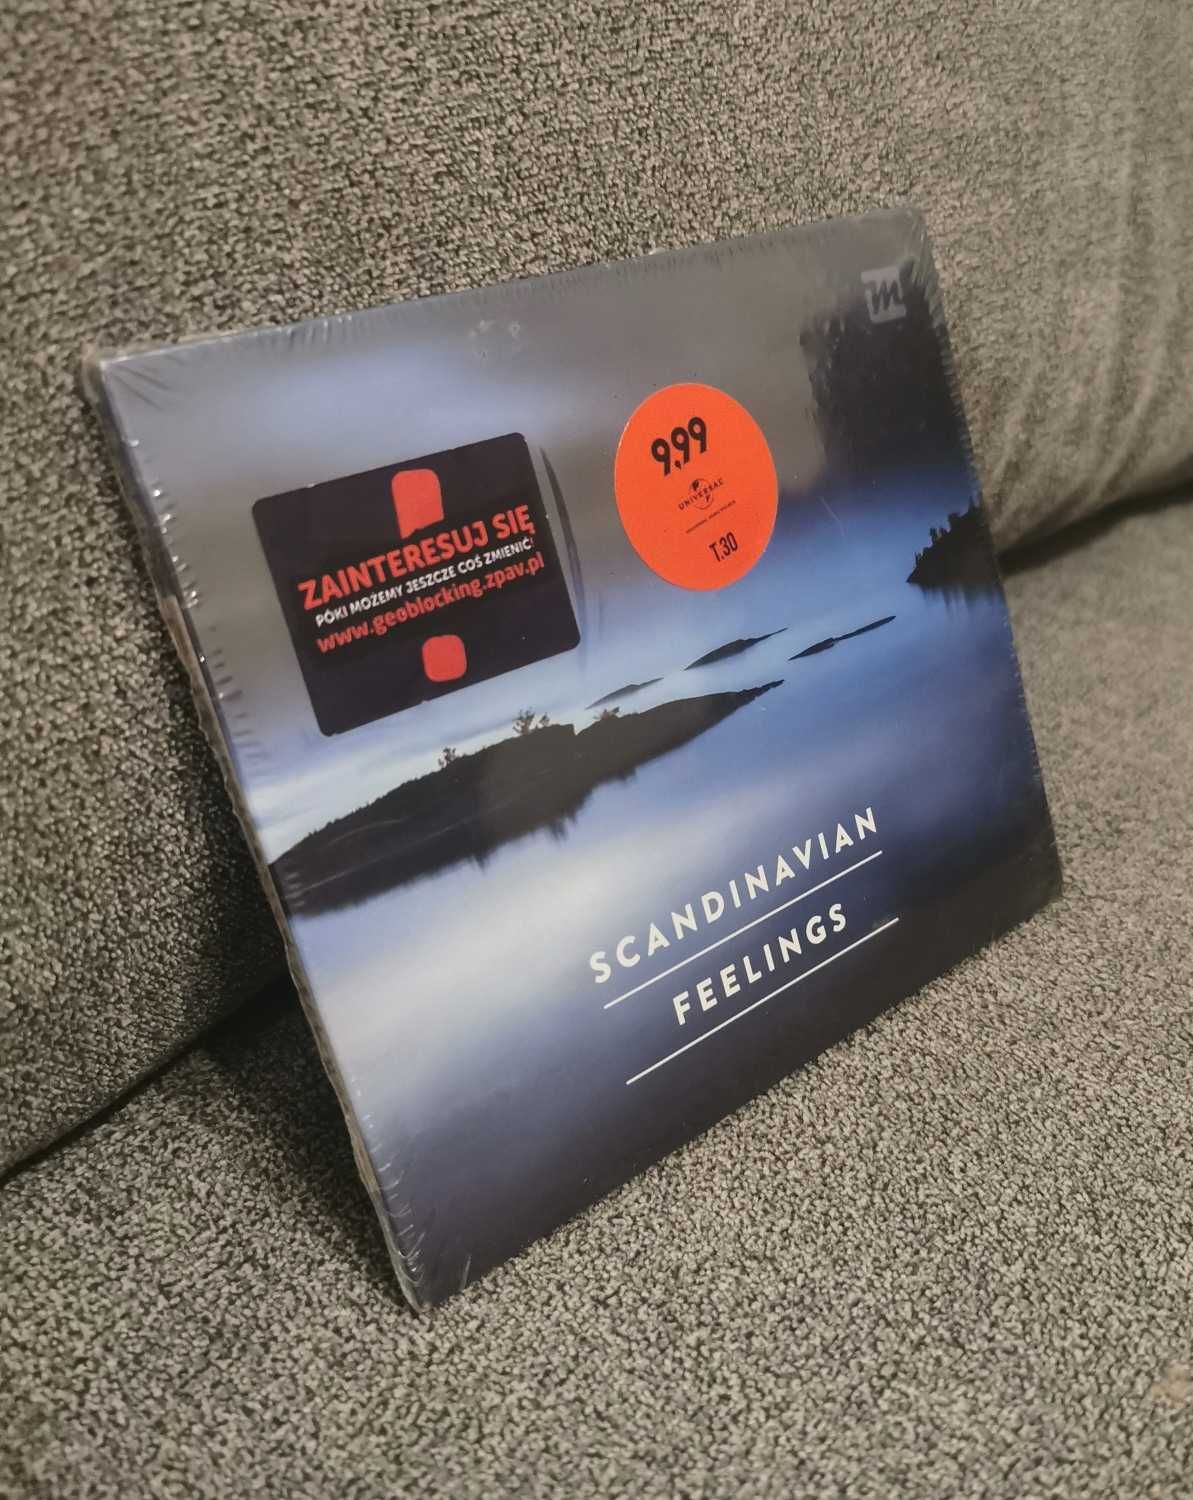 Scandinavian Feelings CD